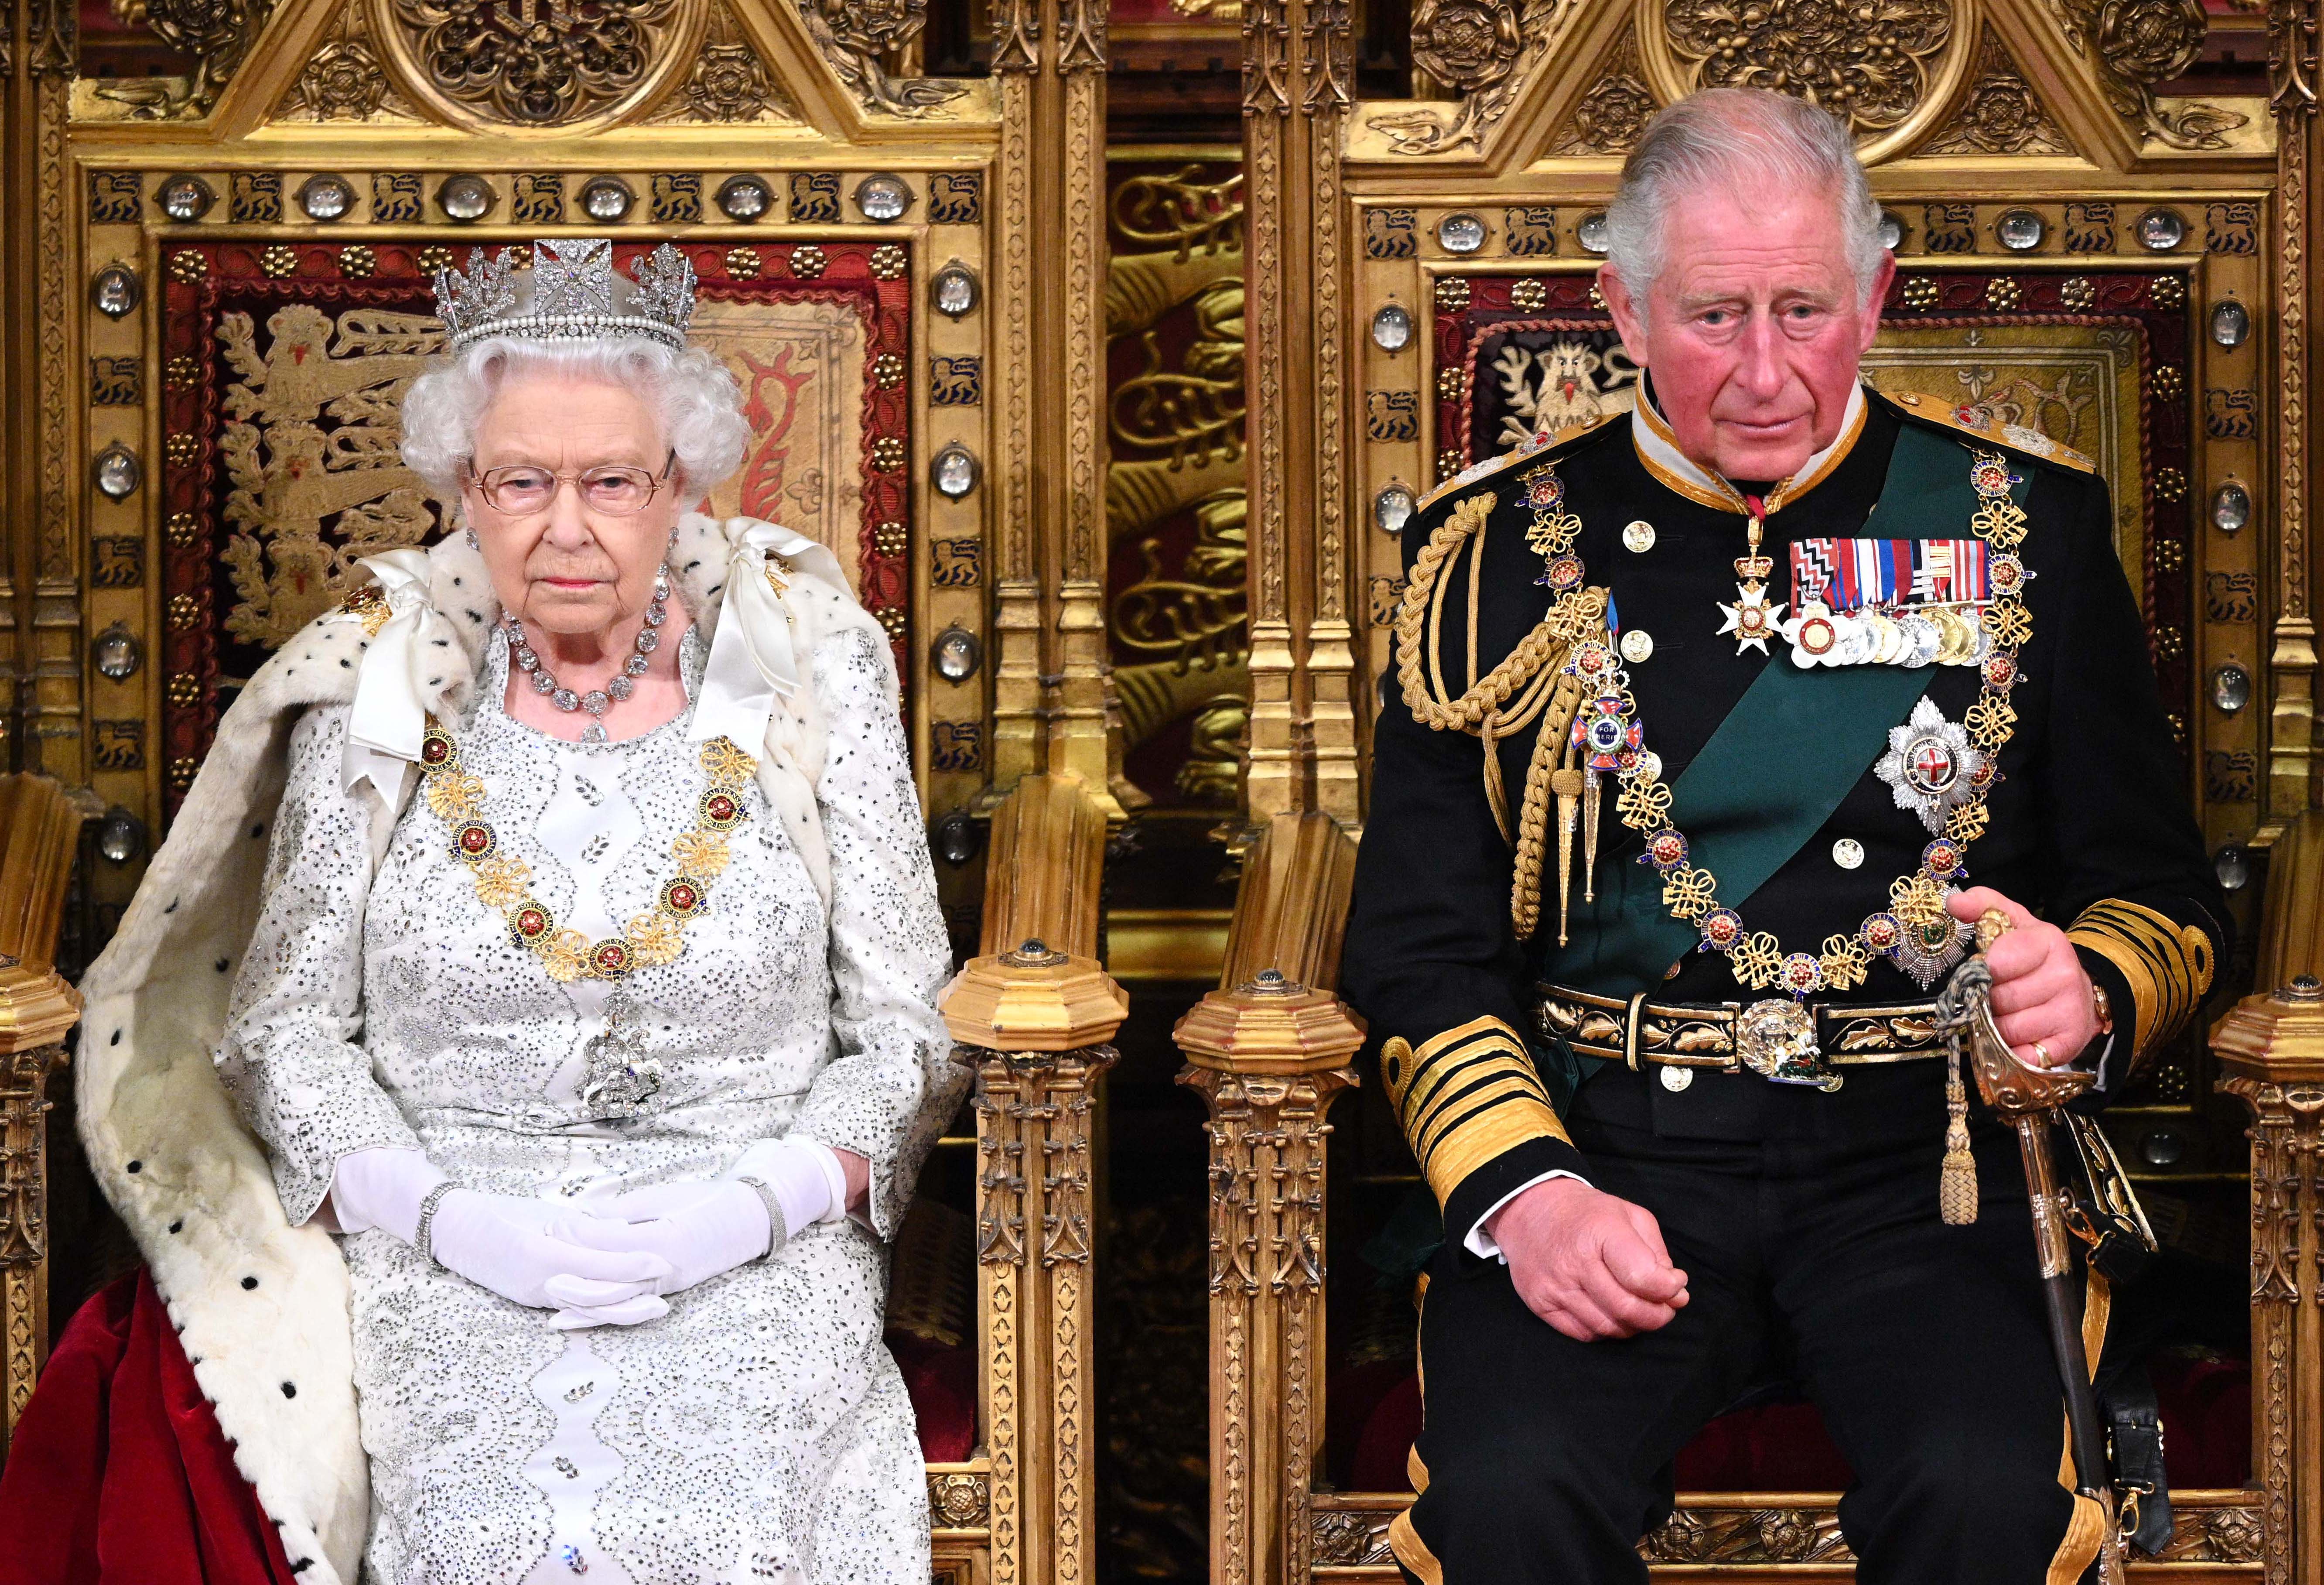 La reine Elizabeth II et le prince Charles, prince de Galles, lors de l'ouverture officielle du Parlement au palais de Westminster, le 14 octobre 2019 à Londres, en Angleterre | Source : Getty Images